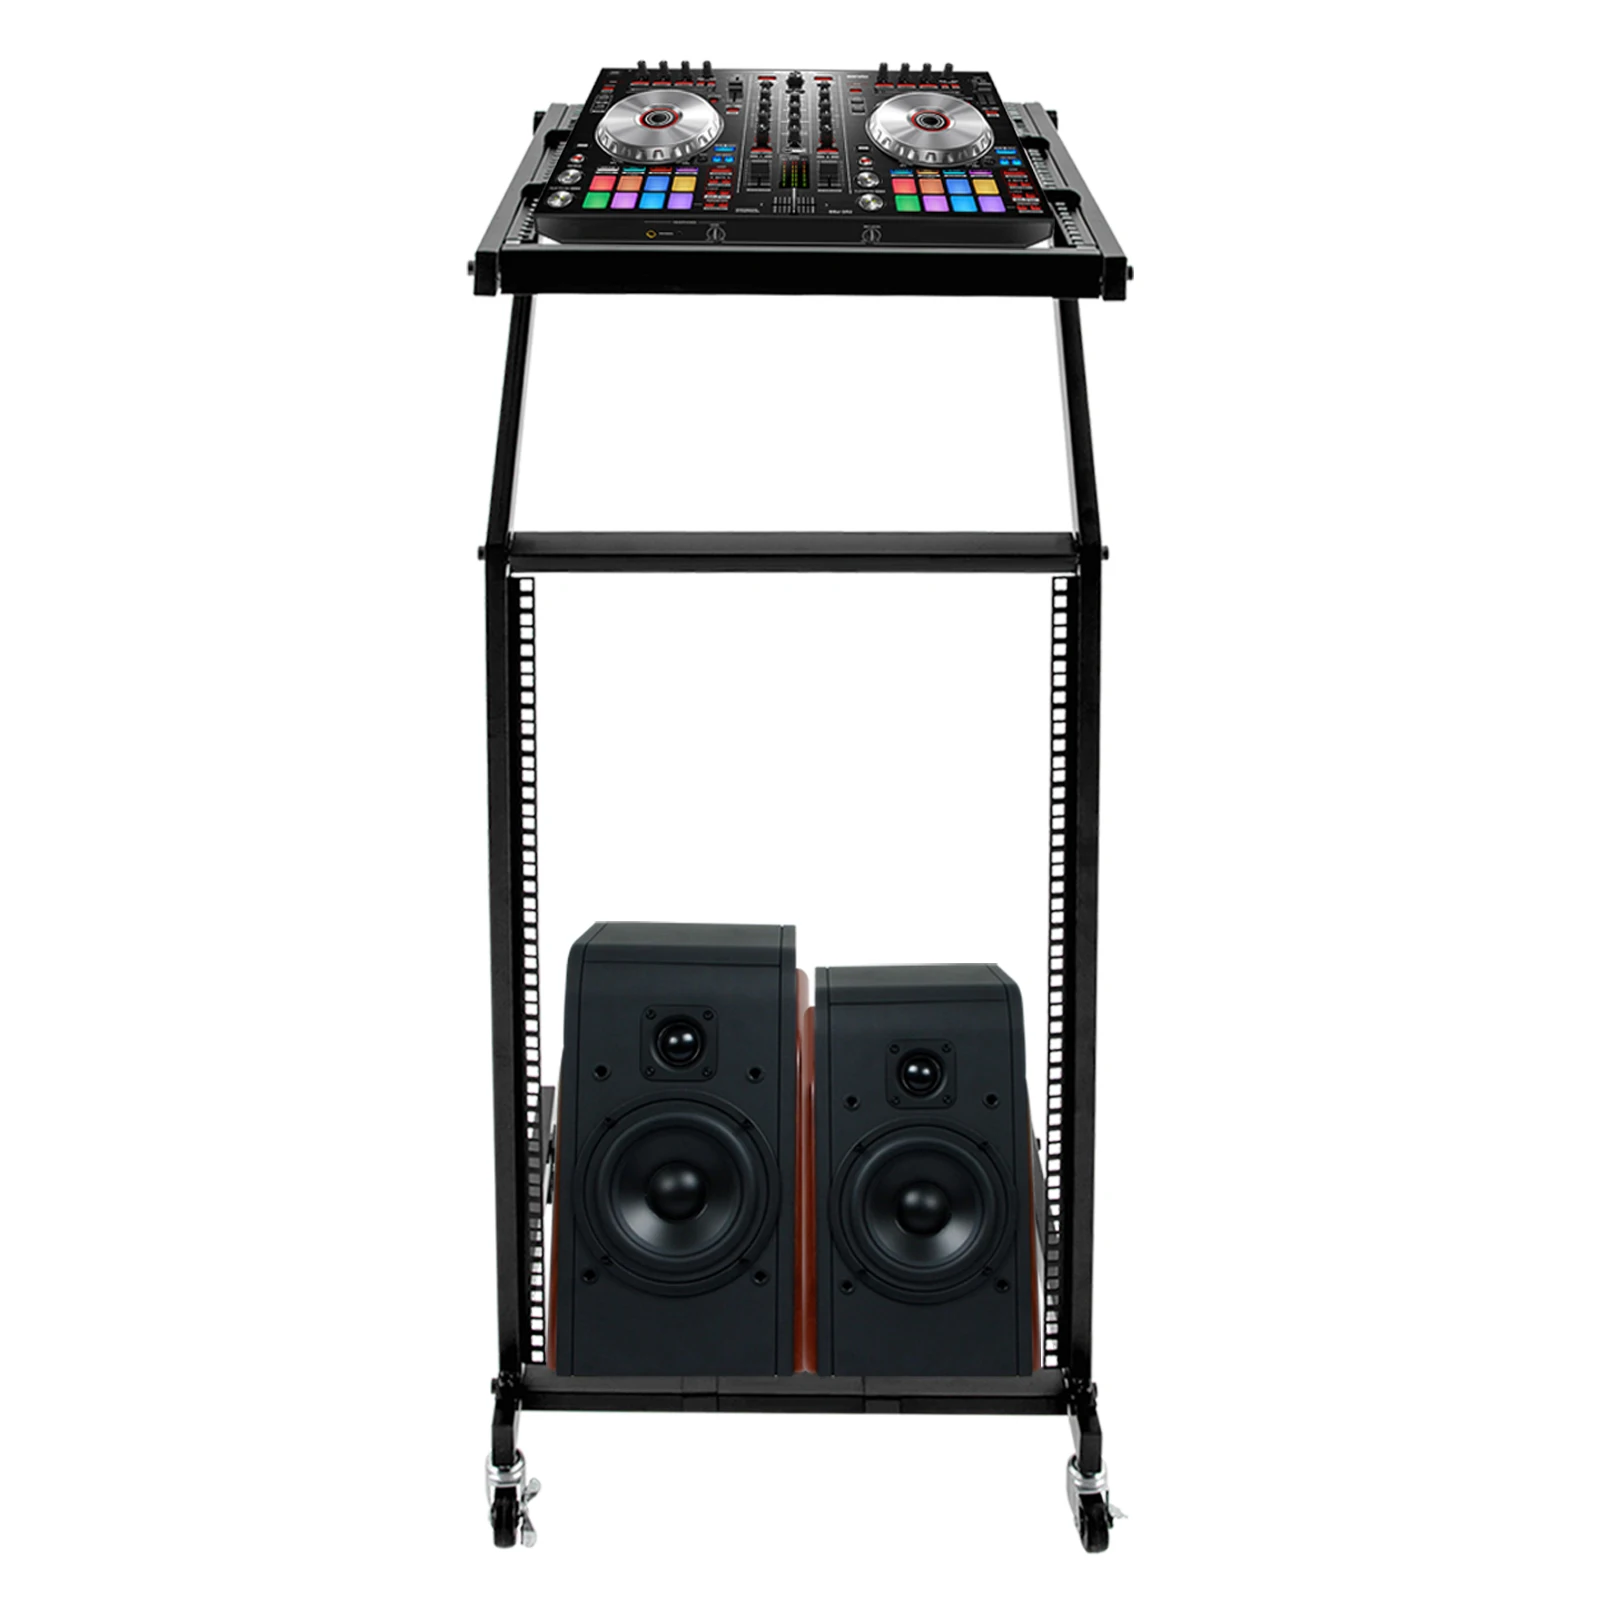 Adjustable Rack Mount Studio Equipment Rolling DJ Mixer Stand